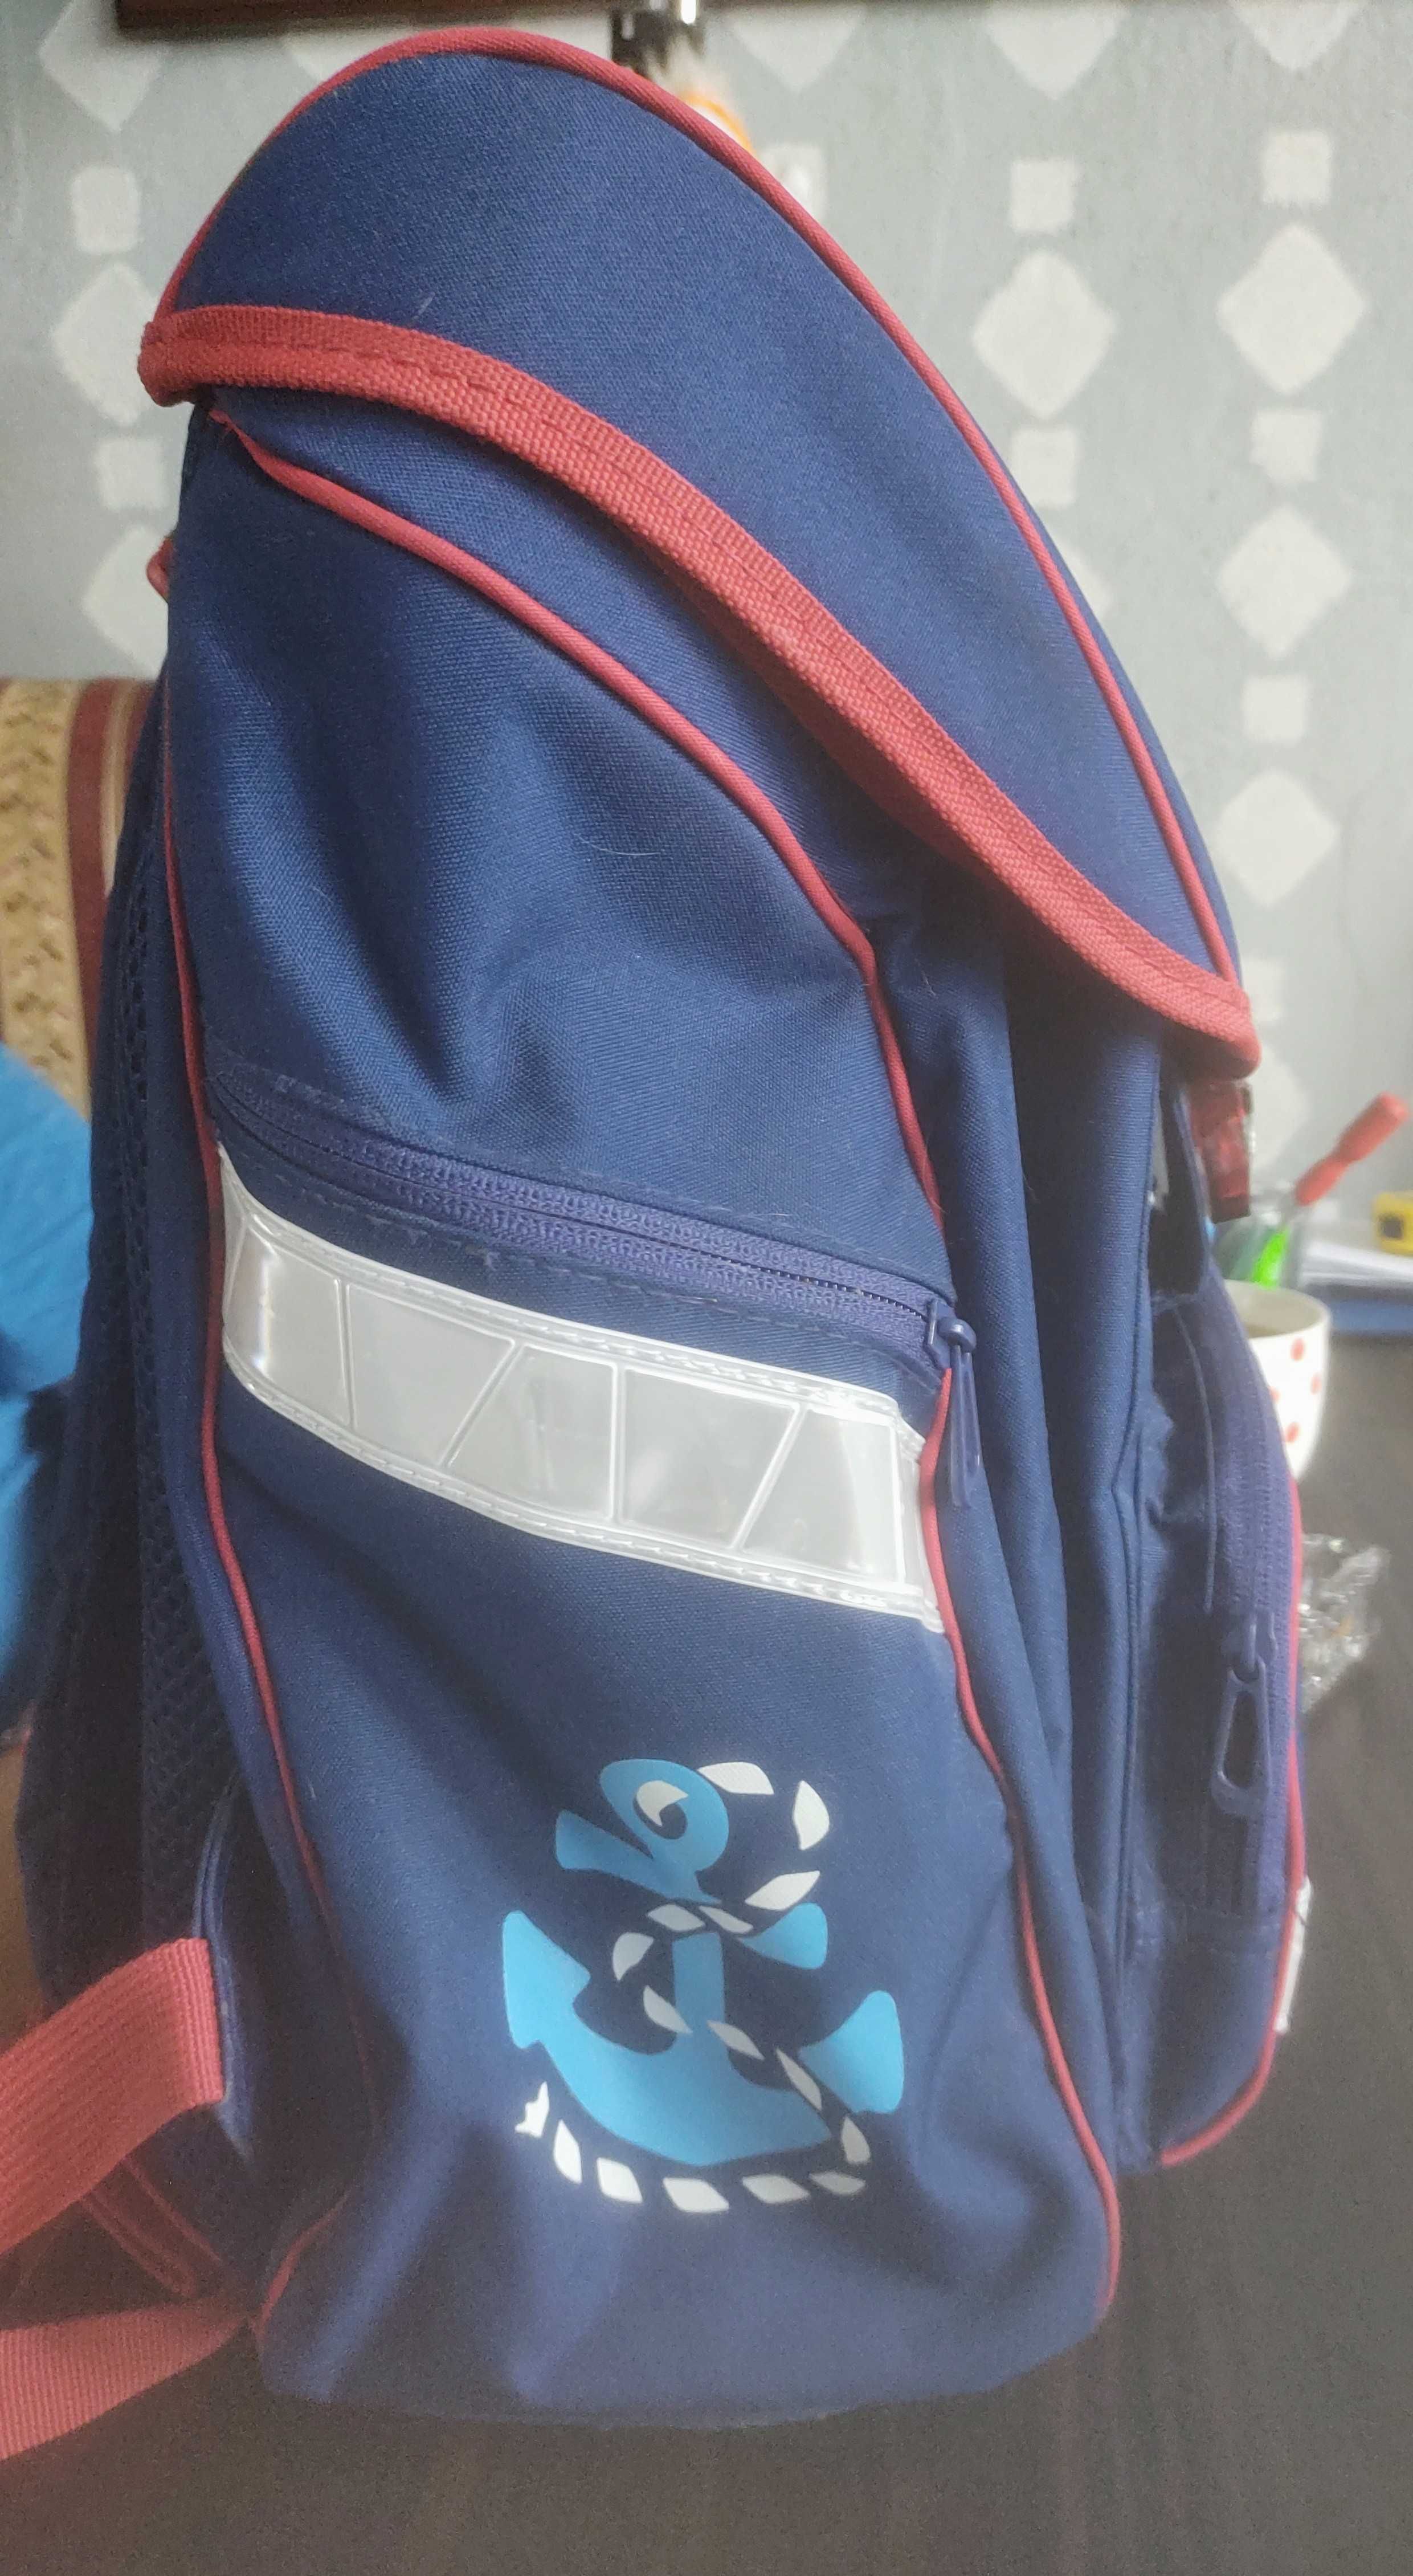 Plecak szkolny z odblaskami idealny dla dziecka